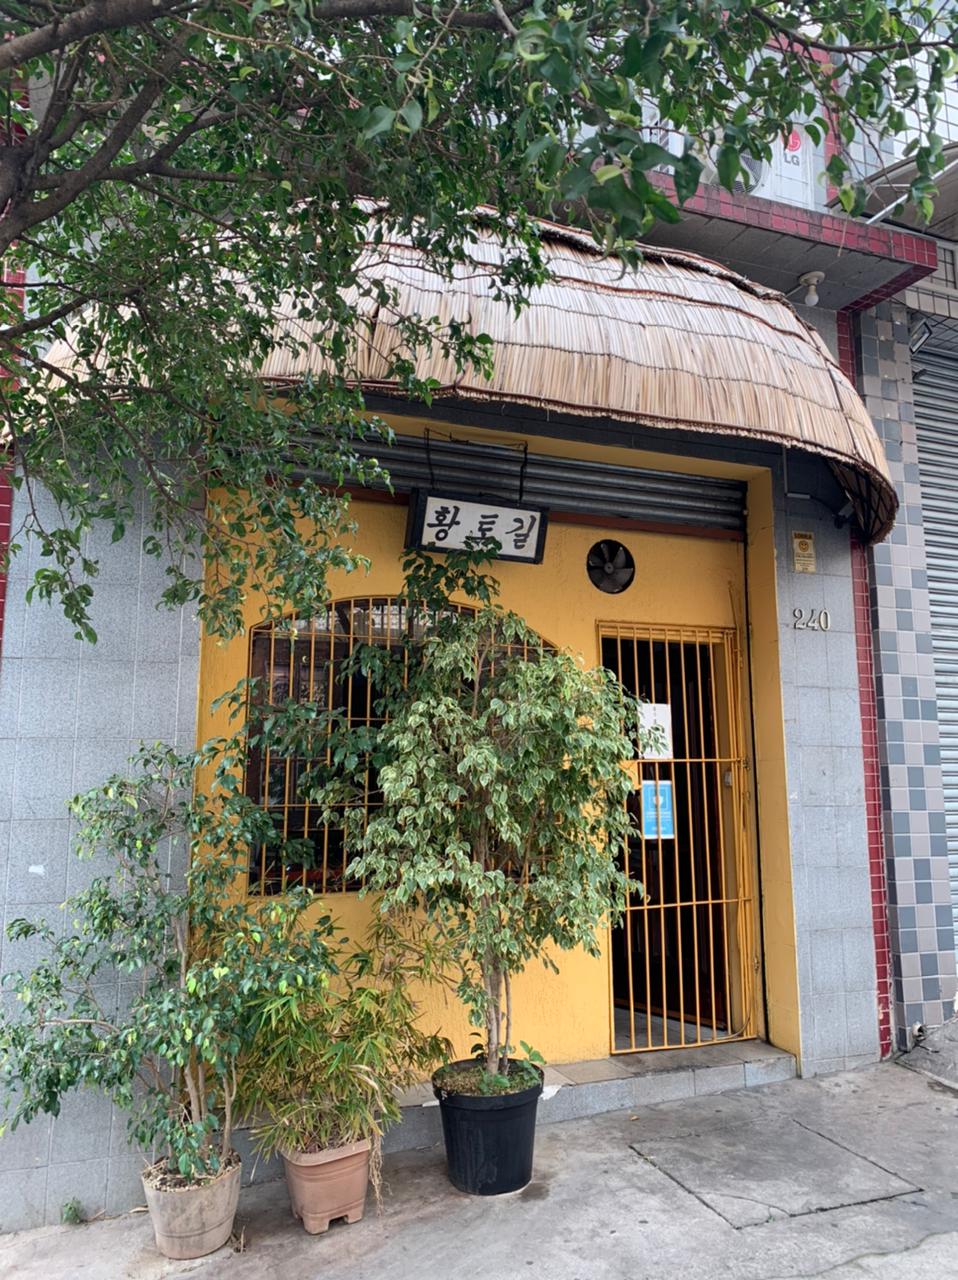 Restaurante Hwang To Gil no Bom Retiro